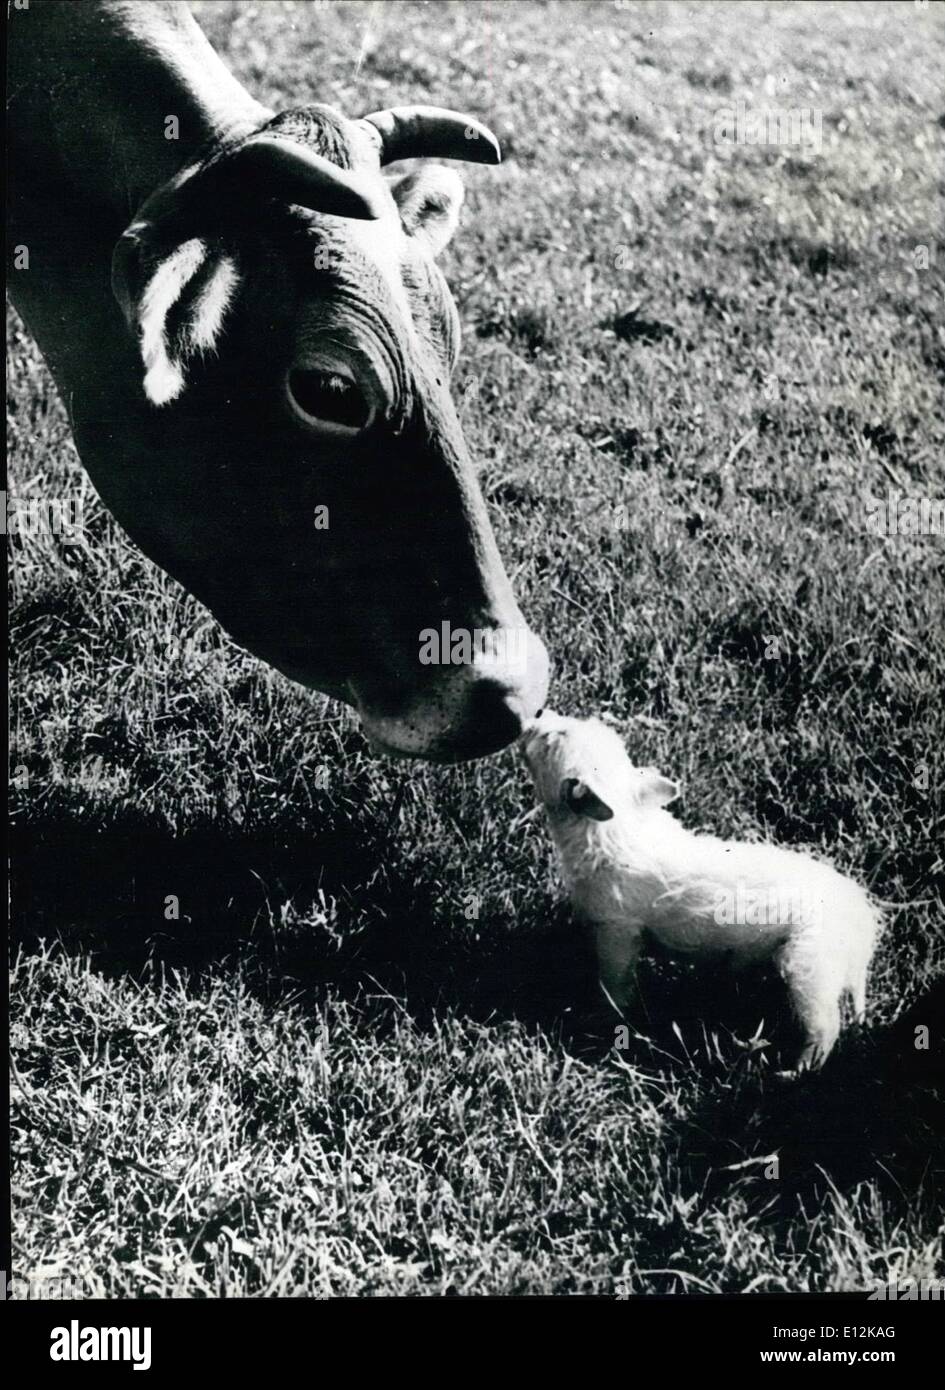 El 24 de febrero, 2012 - Kiss de fragmento: ''Blackberry'' la vaca es lo suficientemente grande como para comer poco ''Snippet'' el perro, pero esa es la última cosa que iba a hacer. A pesar de su tamaño, ella y el cachorro son los mejores amigos en la granja en Rickmansworth donde viven. Foto de stock